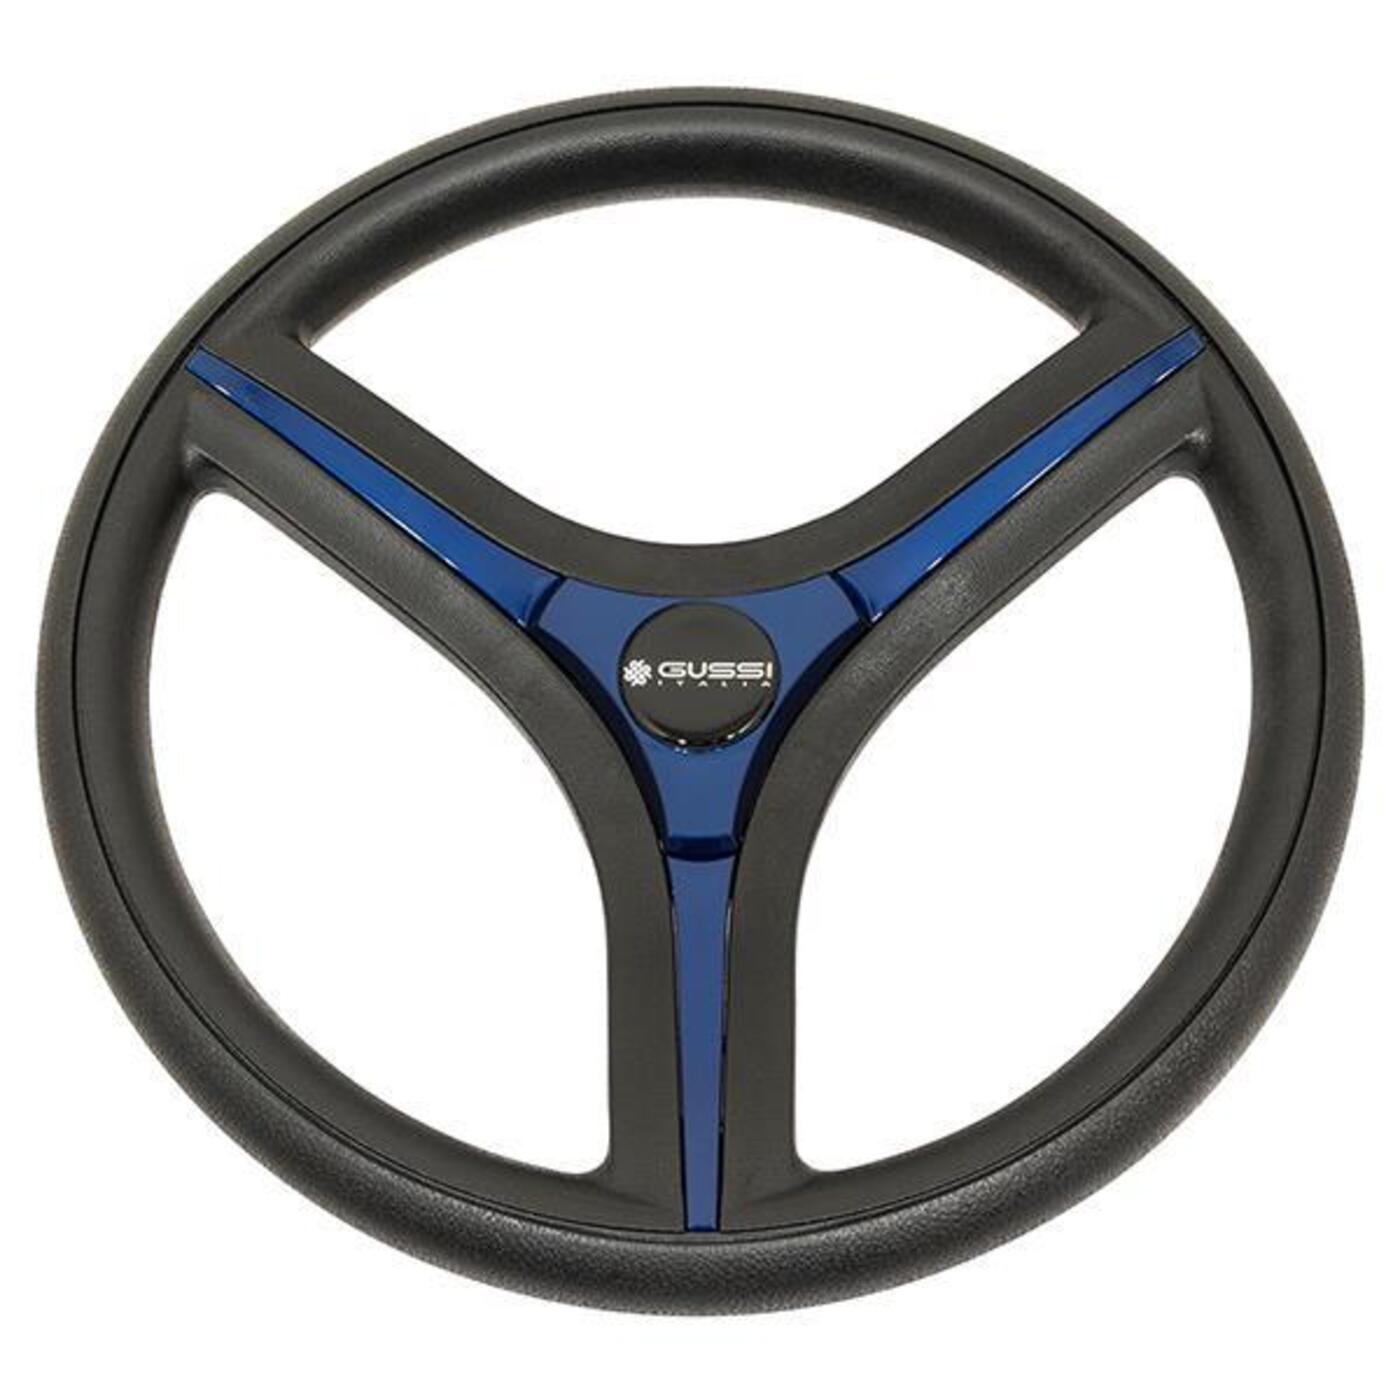 Gussi Italia Brenta Black/Blue Steering Wheel Club Car Precedent Years 2004-Up 06-134